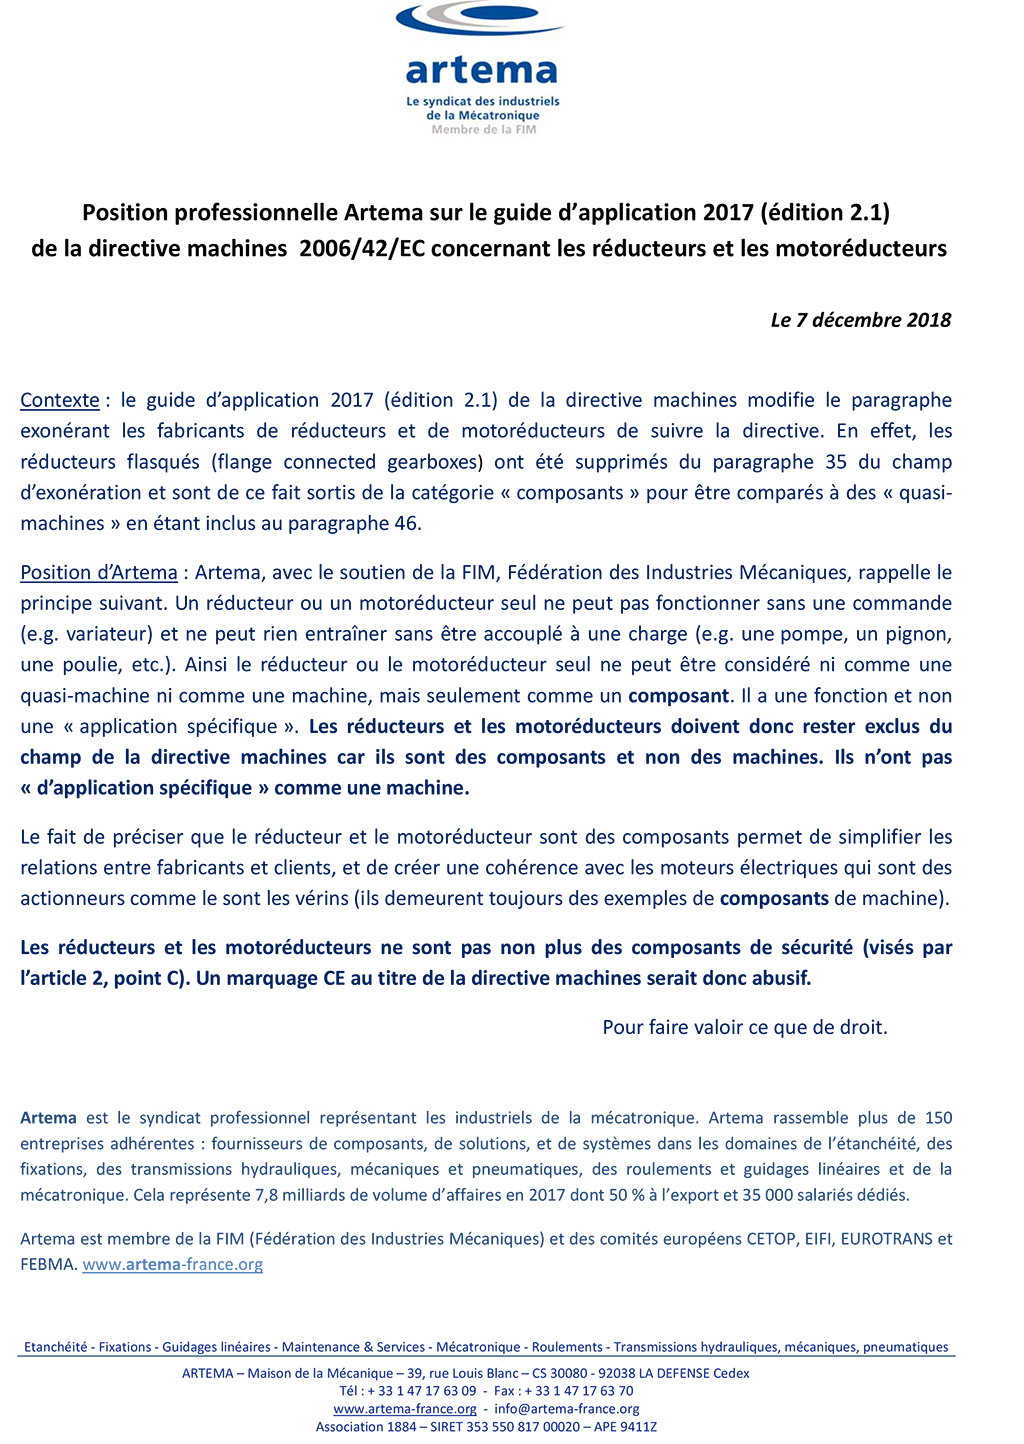 Position professionnelle Artema sur la Directive Machines concernant les réducteurs et les motoréducteurs